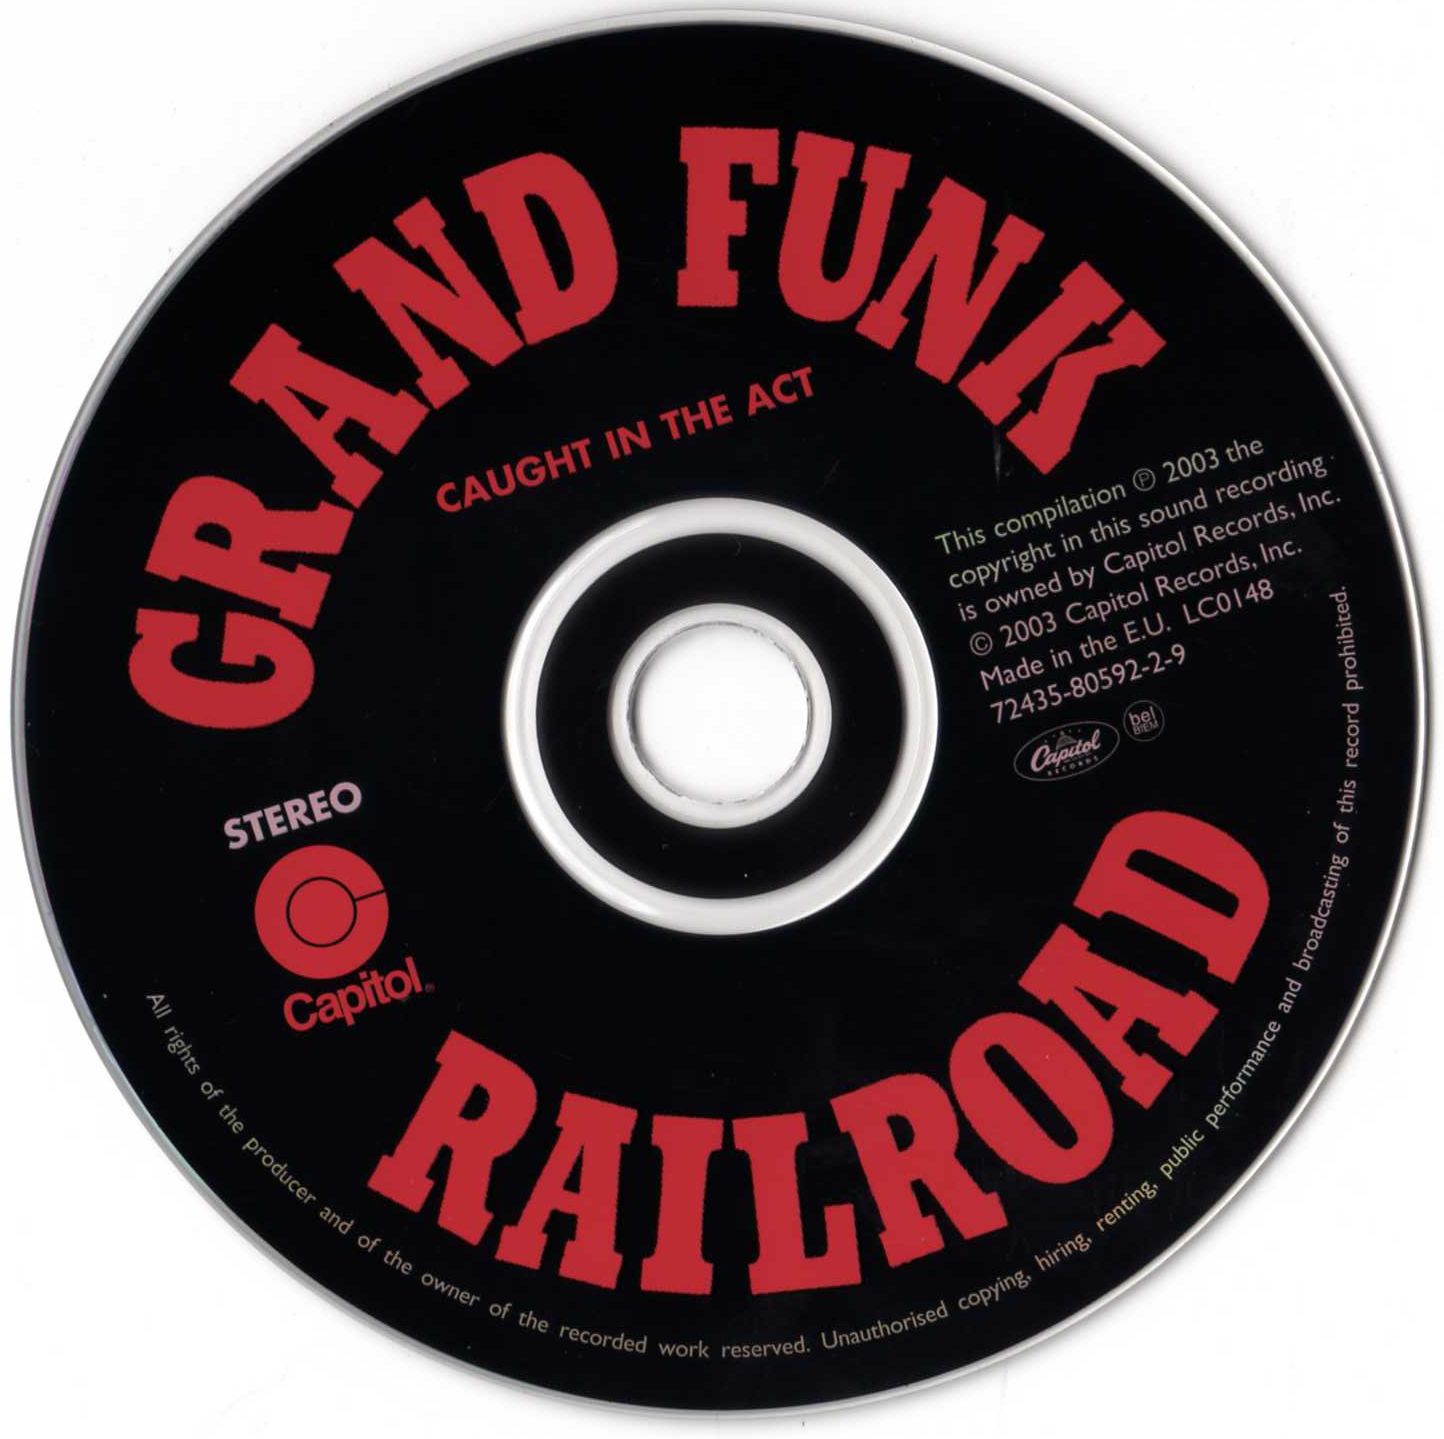 izvodjac grand funk railroad album caught in the act 2002 godina .